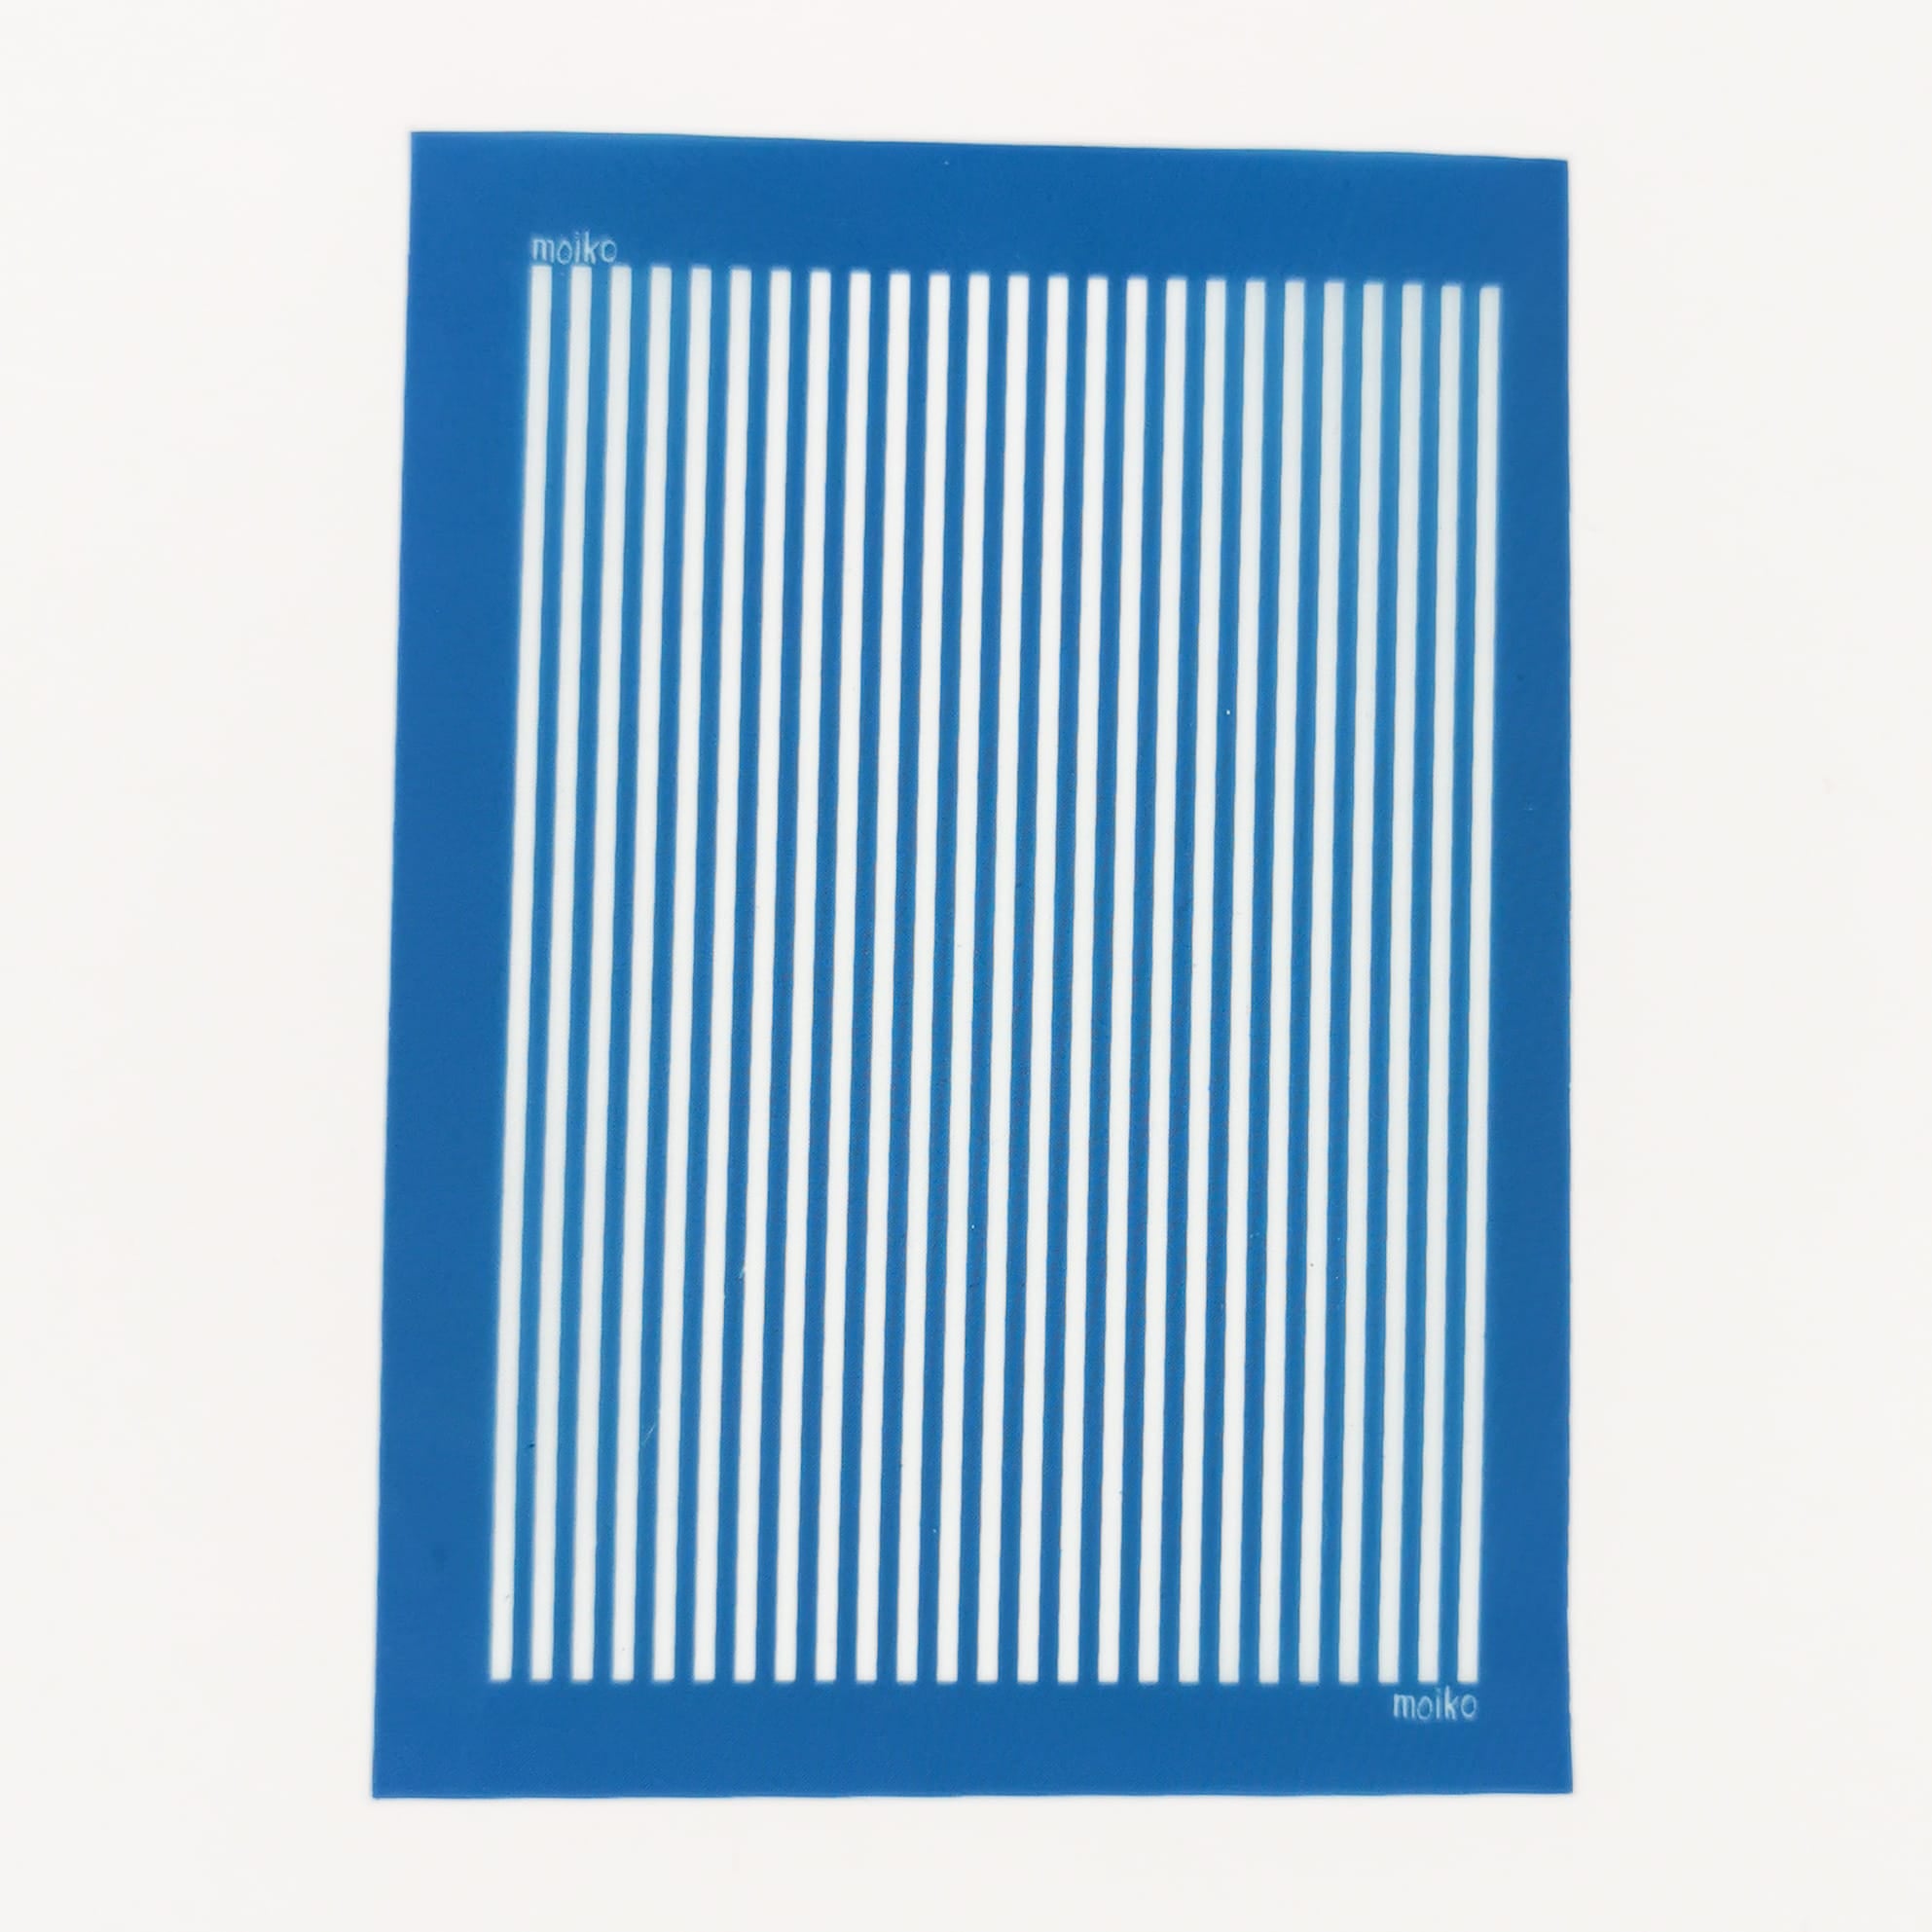 Moiko Silk Screen - Vertical Stripes